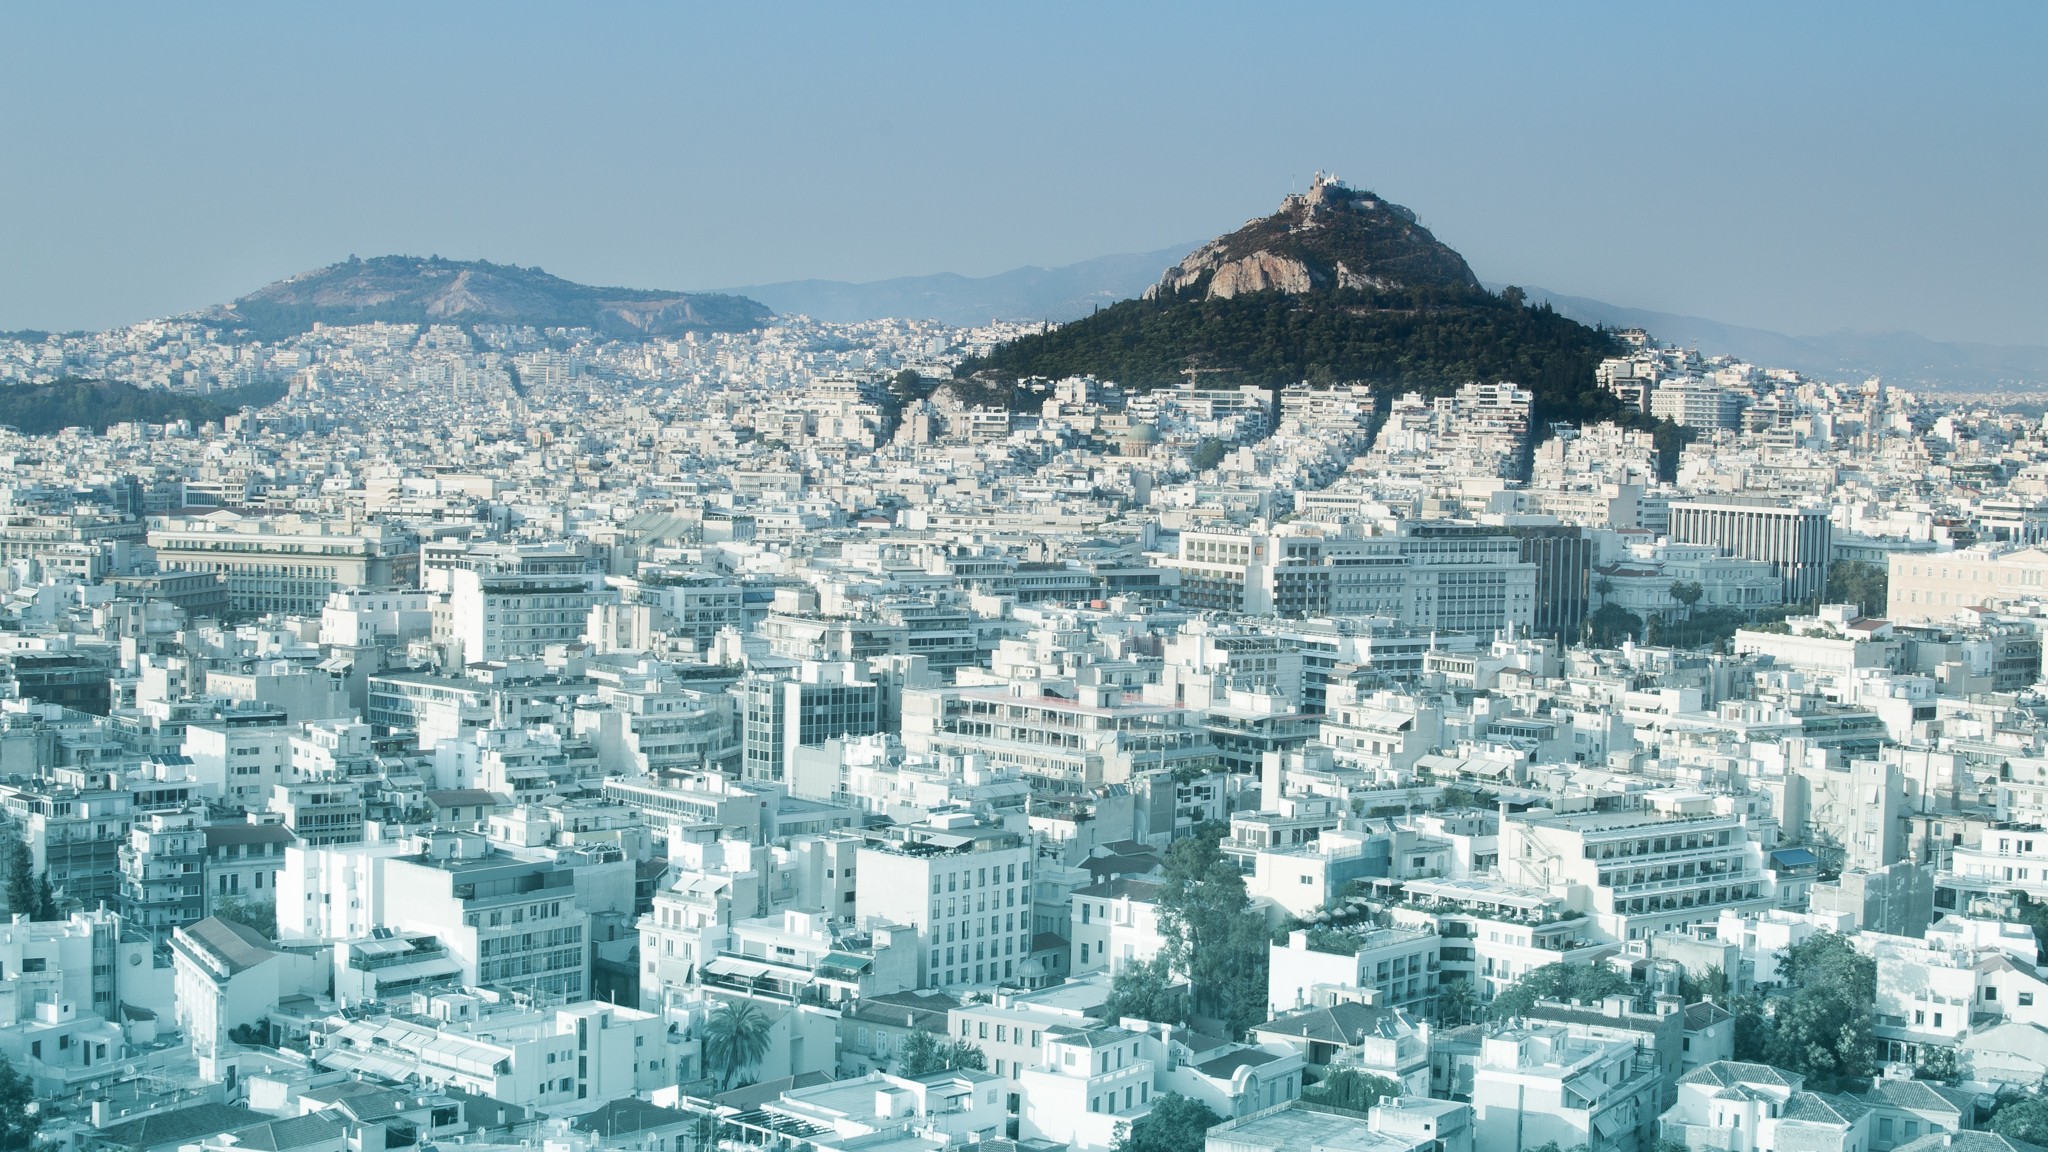 General 2048x1152 Athens hills building cityscape landscape capital Greece